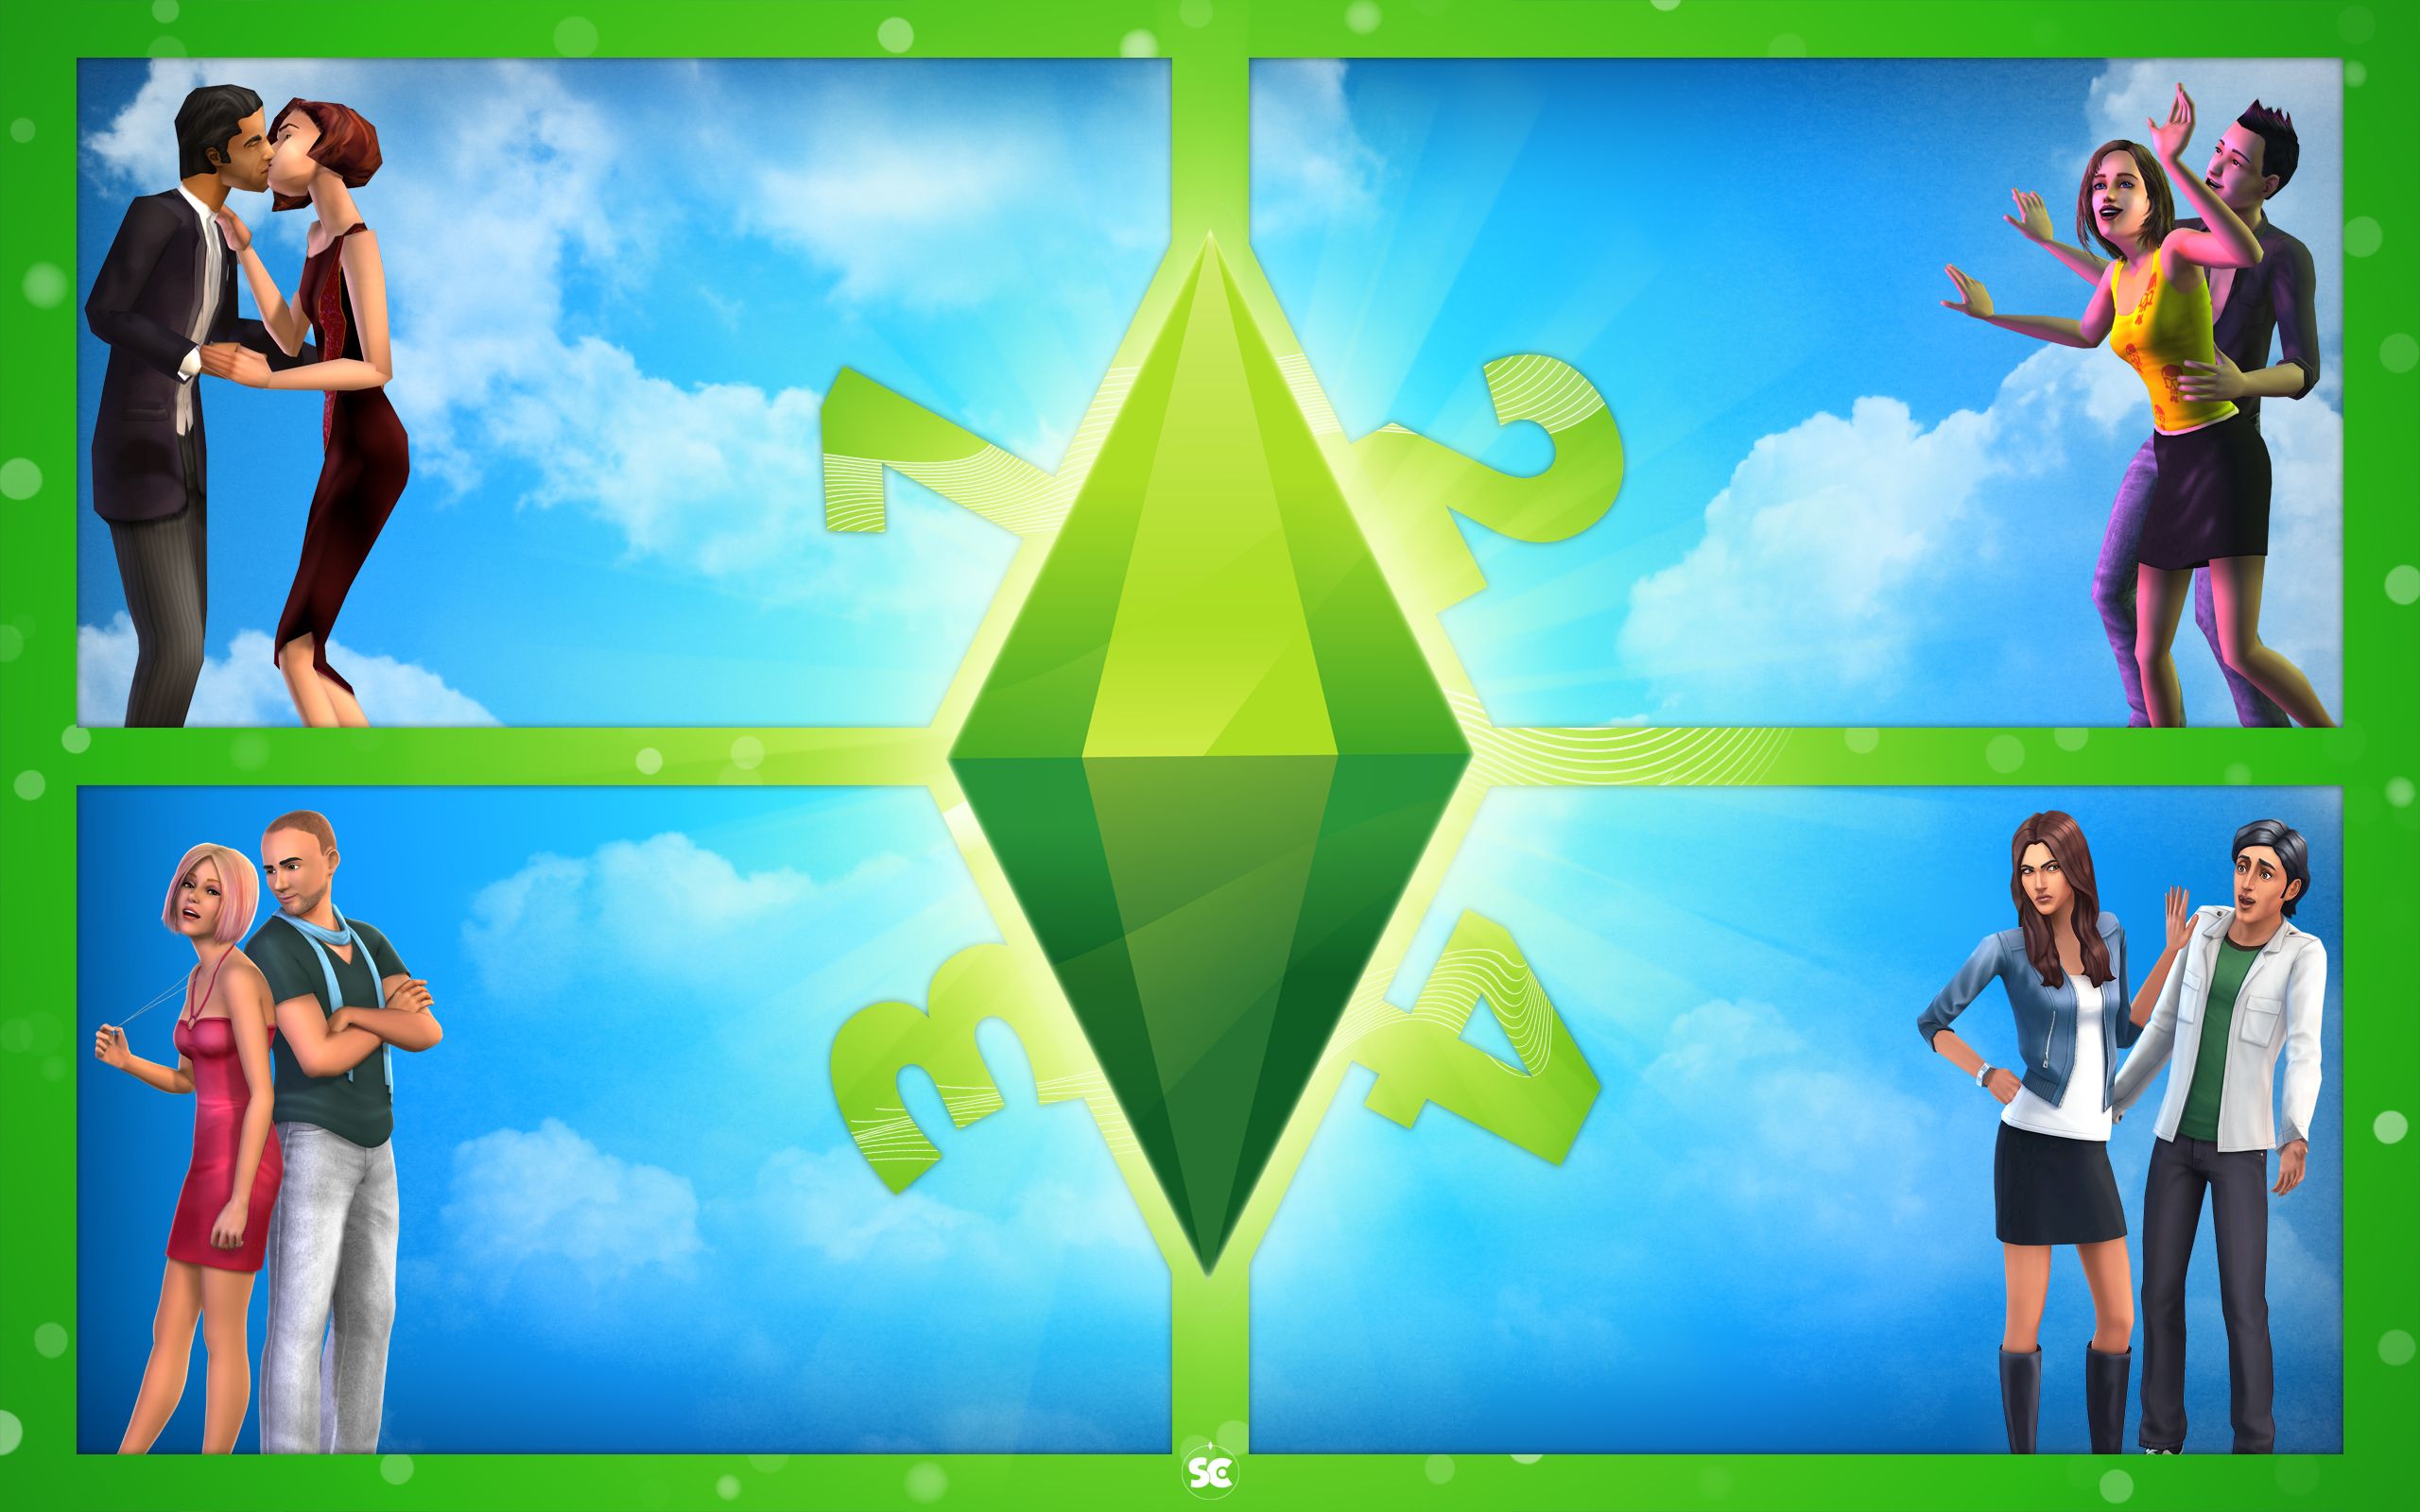 Sims 4 Desktop Wallpapers - Wallpaper Cave